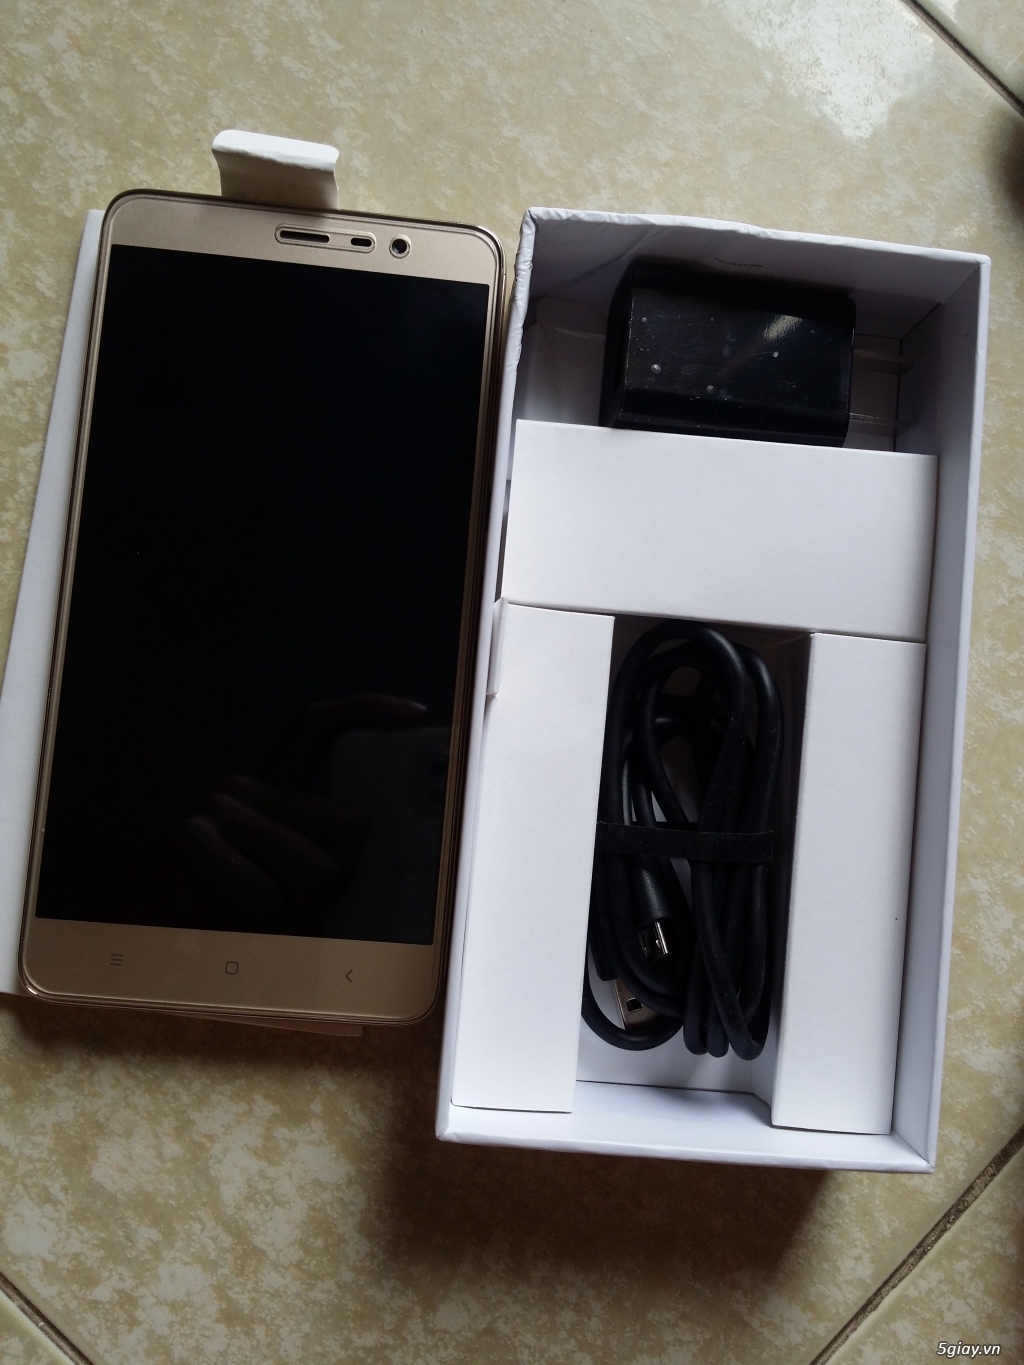 Xiaomi Redmi Note 3 Gold Ram 3G/32G like new 99,9% bh 12 tháng - 2